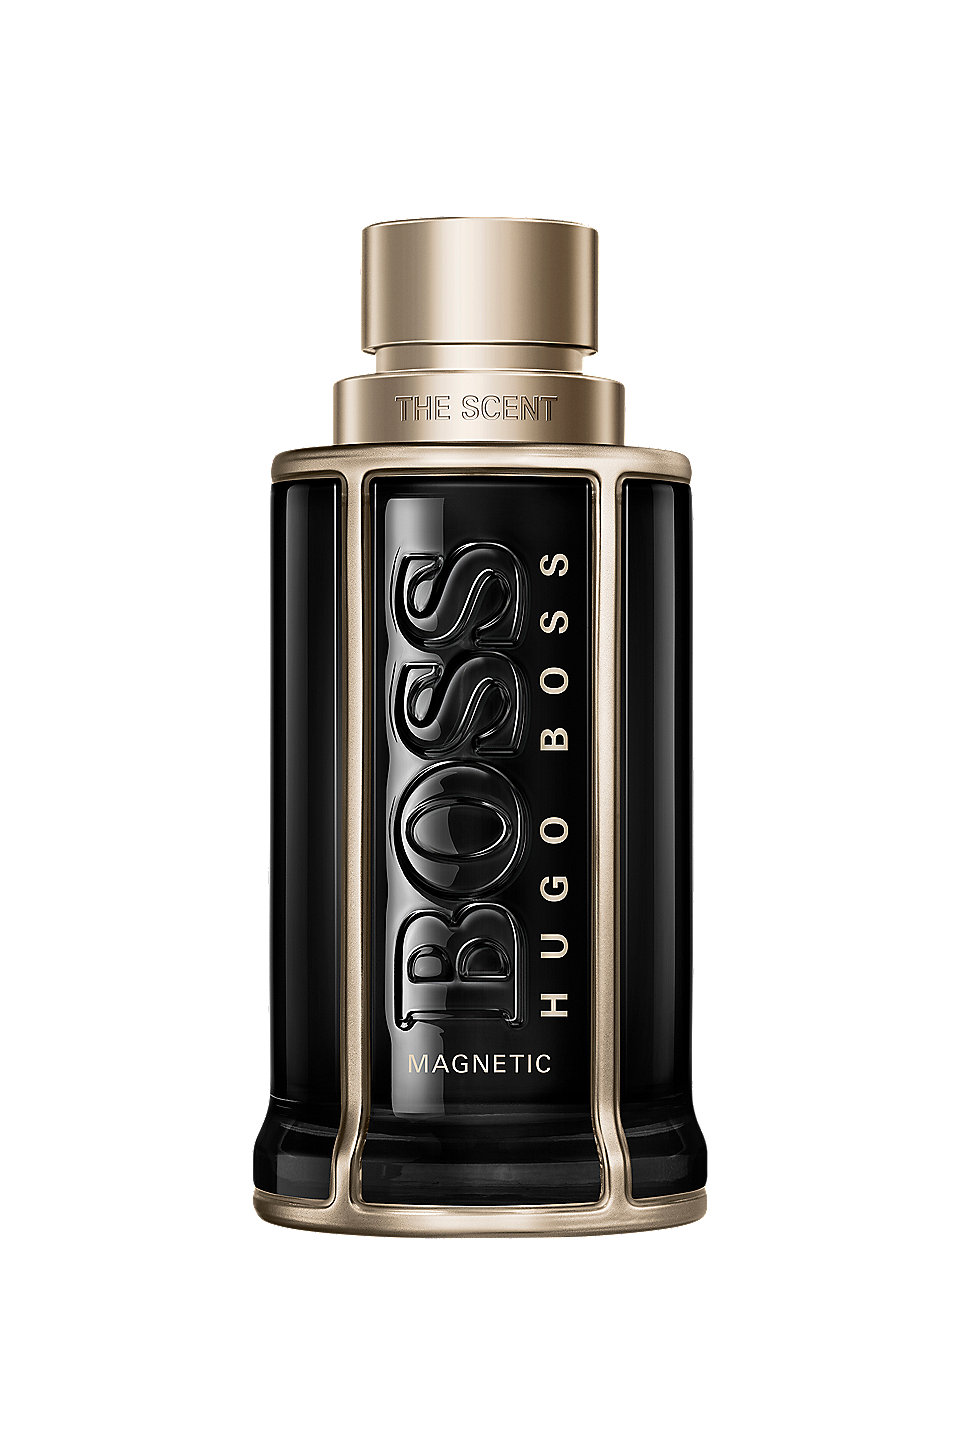 BOSS - BOSS The Scent Magnetic eau de parfum 100ml